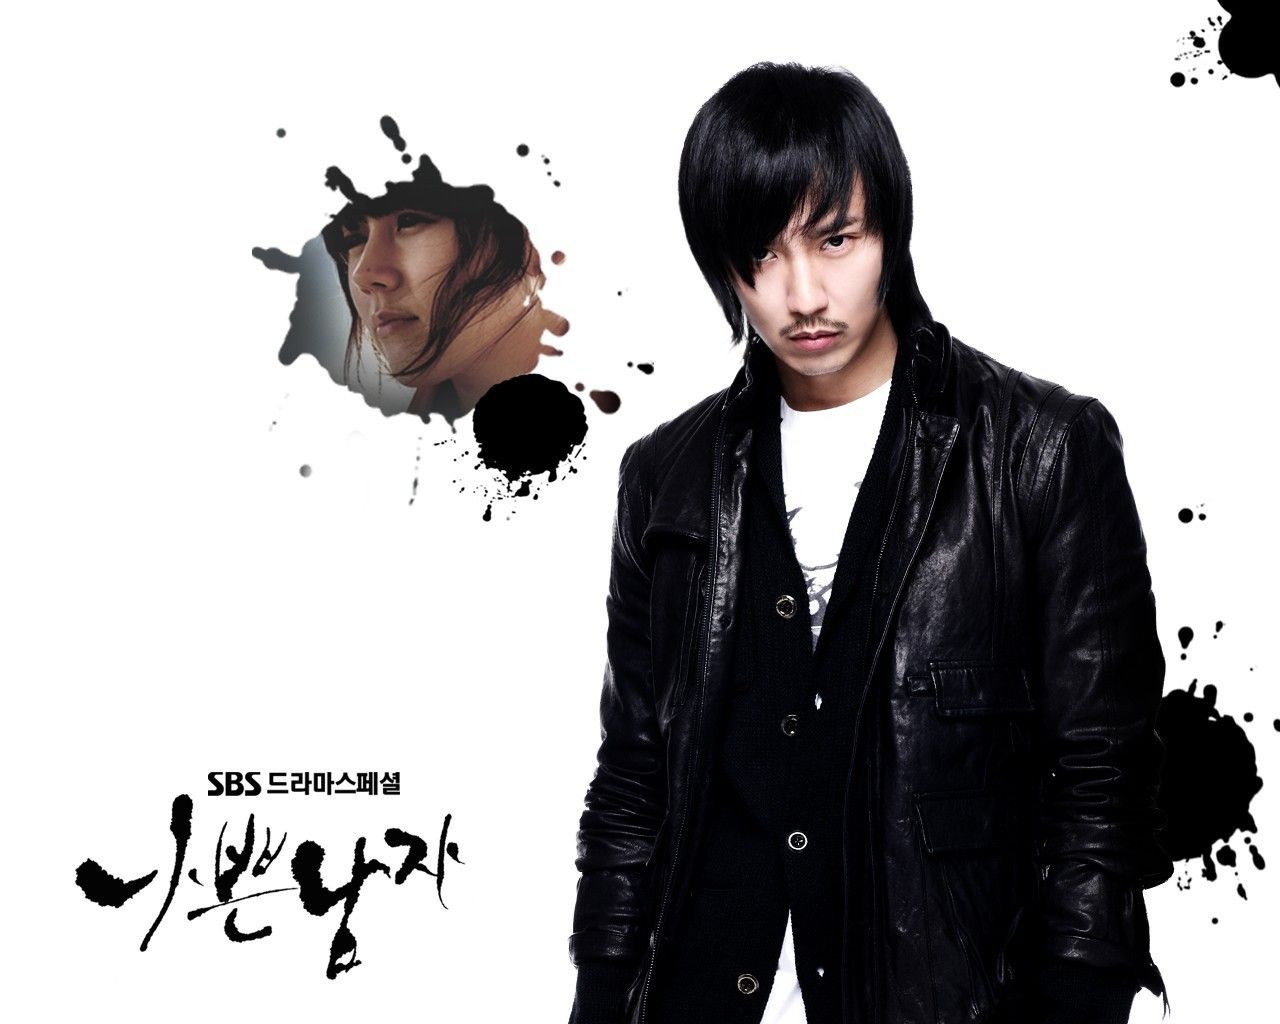 bad guy - Korean Dramas Wallpaper (21700373) - Fanpop